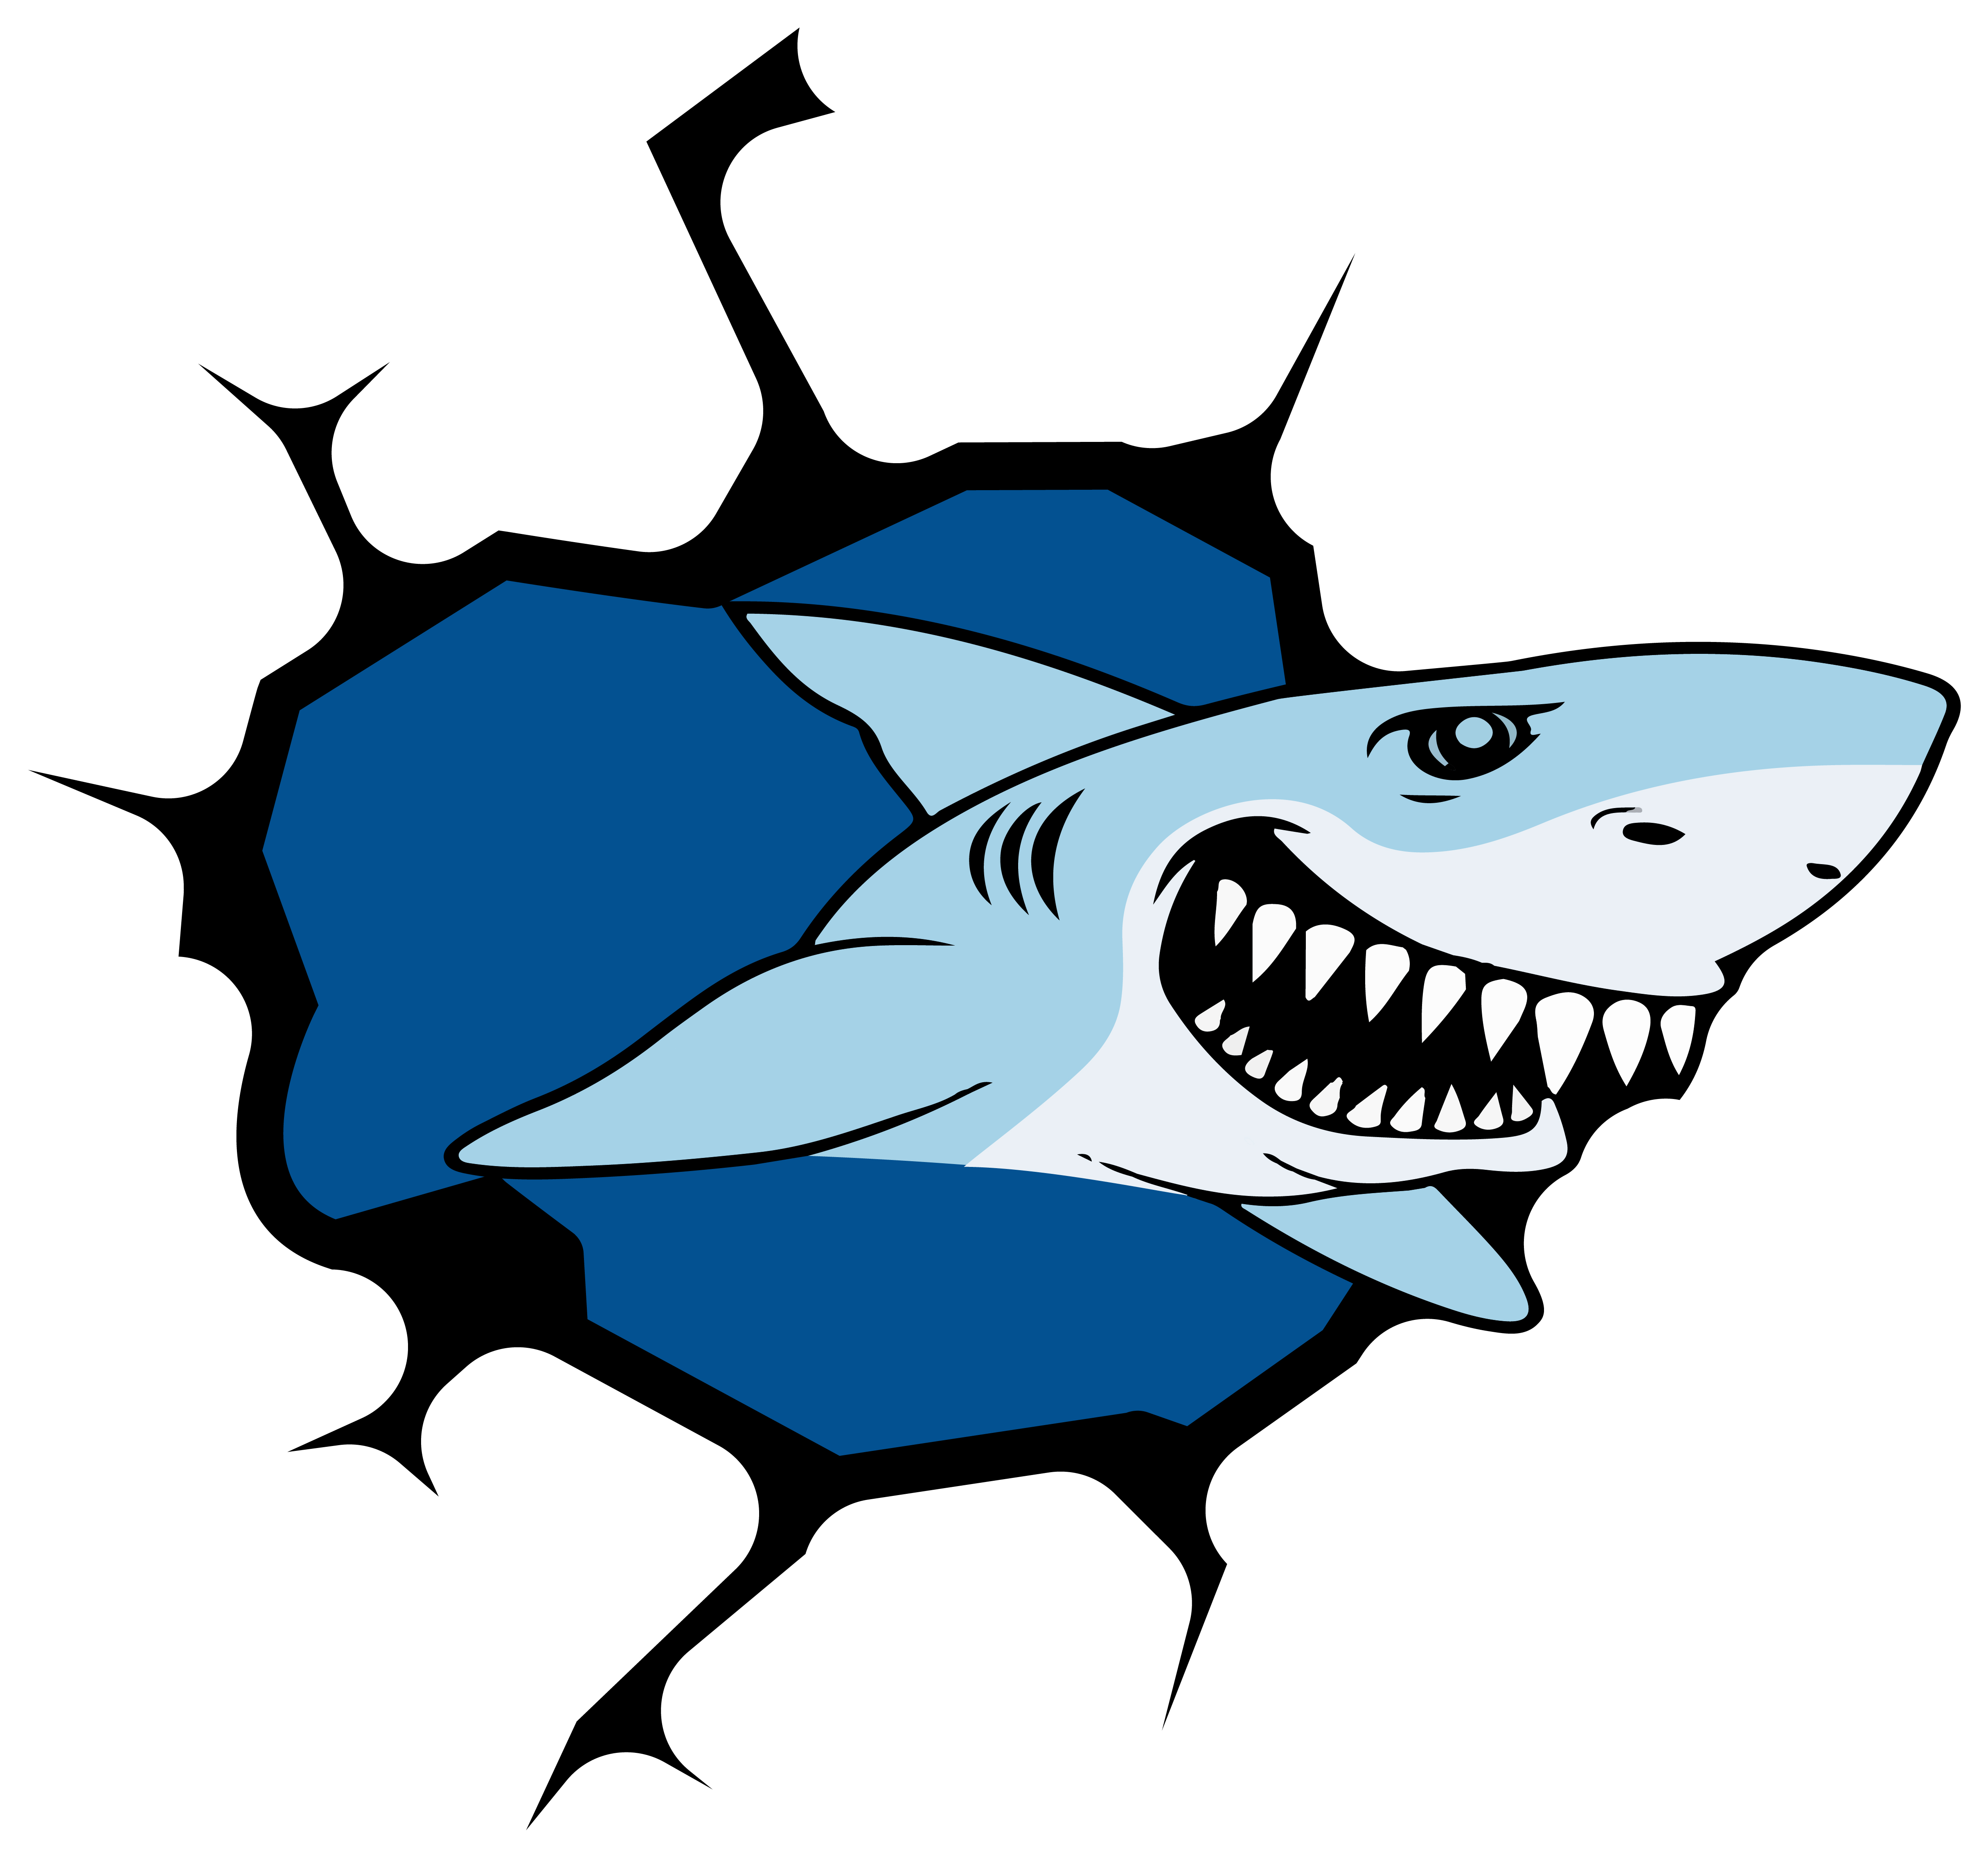 4x Aufkleber Shark Hai 6x6 cm für Auto KFZ Handy Laptop Haifisch Sticker